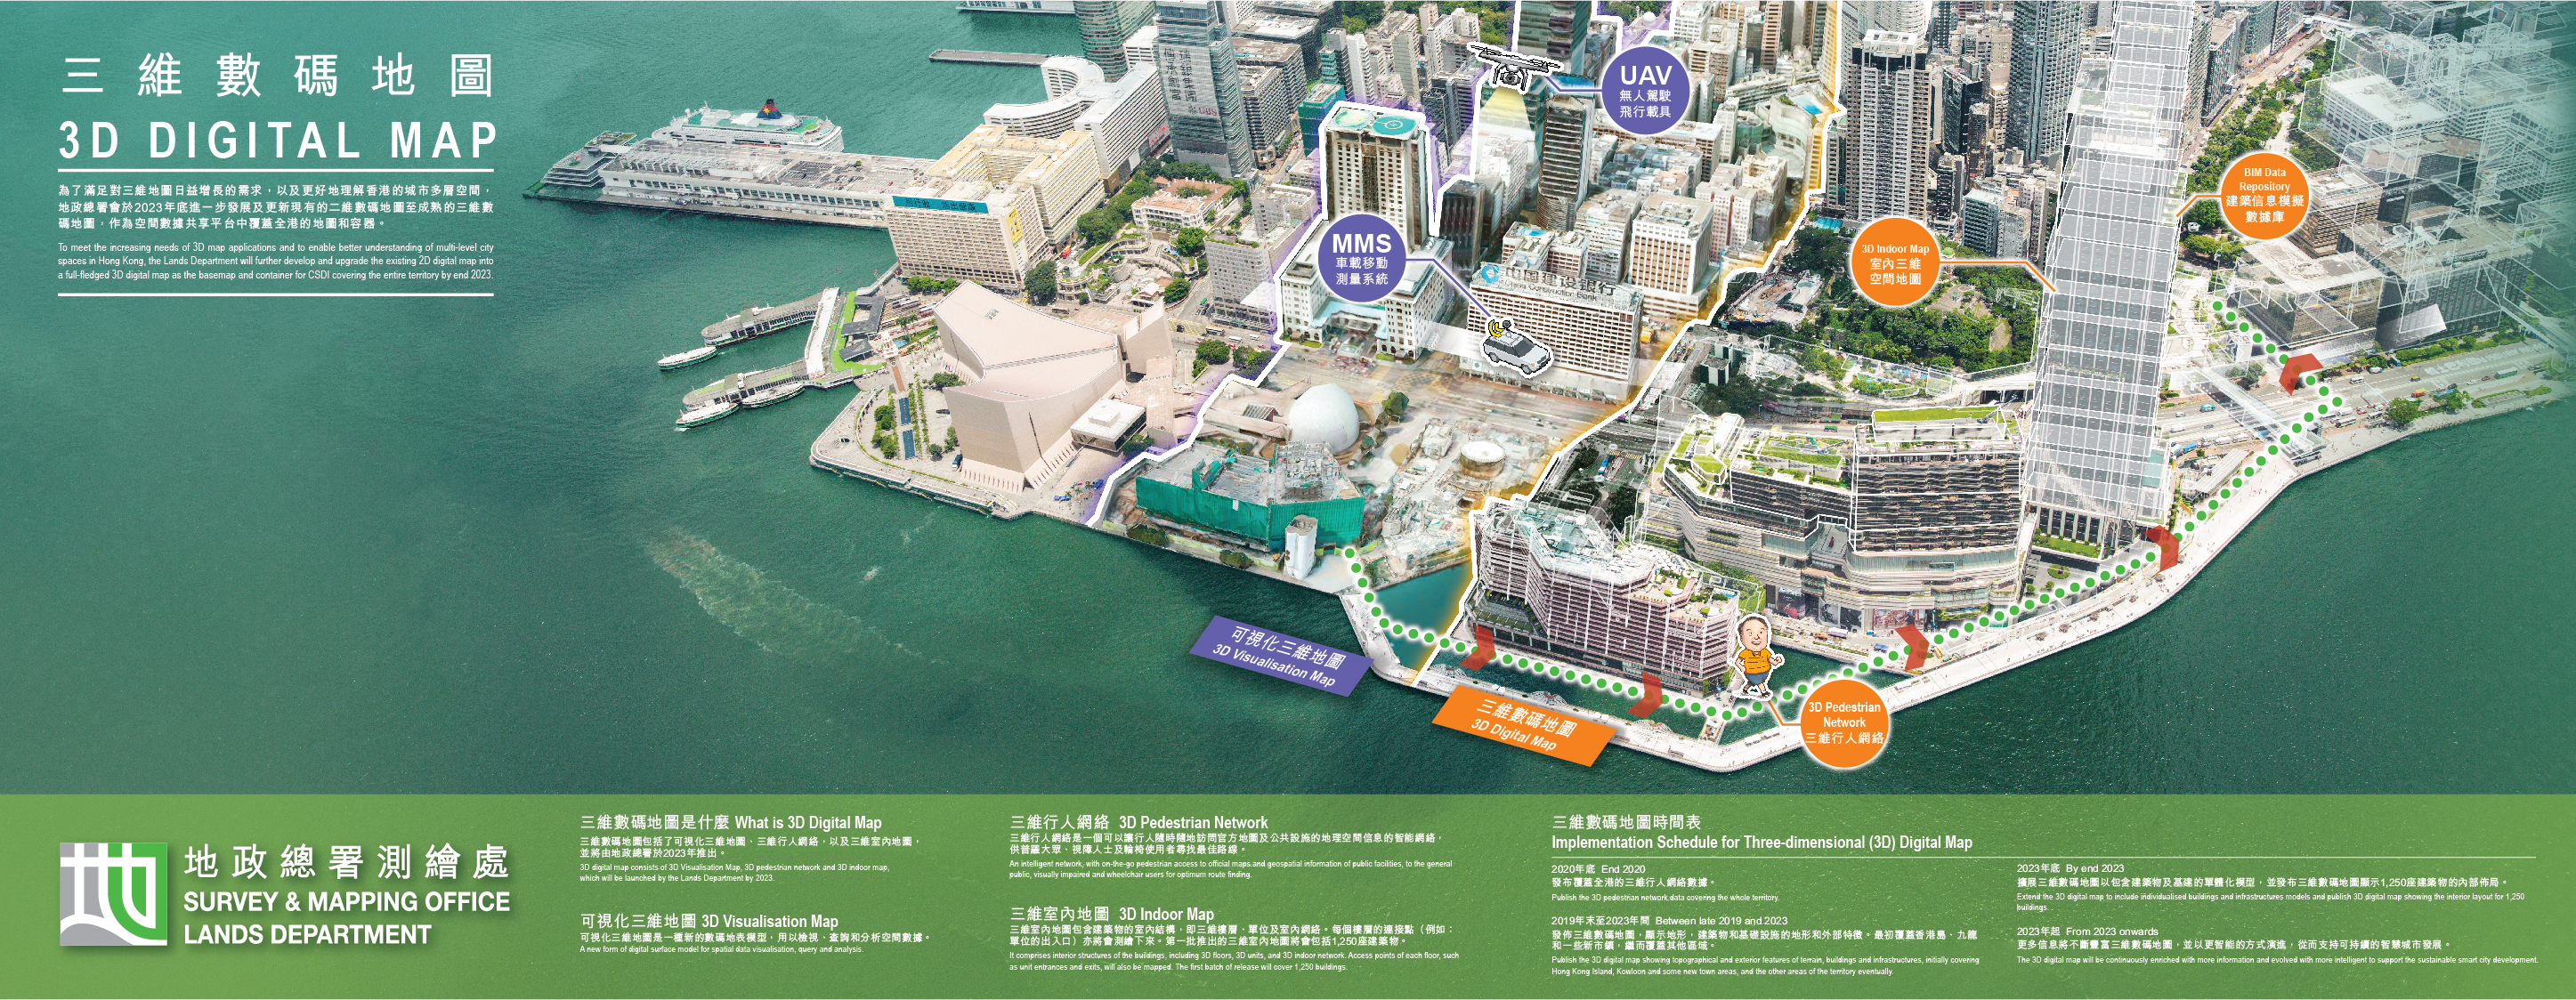 
					三維數碼地圖推行計劃
					為了滿足對三維地圖日益增長的需求，以及更好地理解香港的城市多層空間，地政總署會於2023年底進一步發展及更新現有的二維數碼地圖至成熟的三維數碼地圖，作為空間數據共享平台中覆蓋全港的地圖和容器。

					三維數碼地圖是什麼
					三維數碼地圖包括了可視化三維地圖、三維行人網絡，以及三維室內地圖，並將由地政總署於2023年推出。
					
					可視化三維地圖  
					可視化三維地圖是一種新的數碼地表模型，用以檢視、查詢和分析空間數據。

					三維行人網絡
					三維行人網絡是一個可以讓行人隨時隨地訪問官方地圖及公共設施的地理空間信息的智能網絡，供普羅大眾、視障人士及輪椅使用者尋找最佳路線。
					
					三維室內地圖
					三維室內地圖包含建築物的室內結構，即三維樓層、單位及室內網絡。每個樓層的連接點（例如：單位的出入口）亦將會測繪下來。第一批推出的三維室內地圖將會包括1,250座建築物。


					三維數碼地圖時間表

					2020年底 
					發布覆蓋全港的三維行人網絡數據。

					2019年末至2023年間
					發佈三維數碼地圖，顯示地形，建築物和基礎設施的地形和外部特徵。最初覆蓋香港島、九龍和一些新市鎮，繼而覆蓋其他區域。

					2023年底
					擴展三維數碼地圖以包含建築物及基建的單體化模型，並發布三維數碼地圖顯示1,250座建築物的內部佈局。

					2023年起 
					更多信息將不斷豐富三維數碼地圖，並以更智能的方式演進，從而支持可持續的智慧城市發展。  